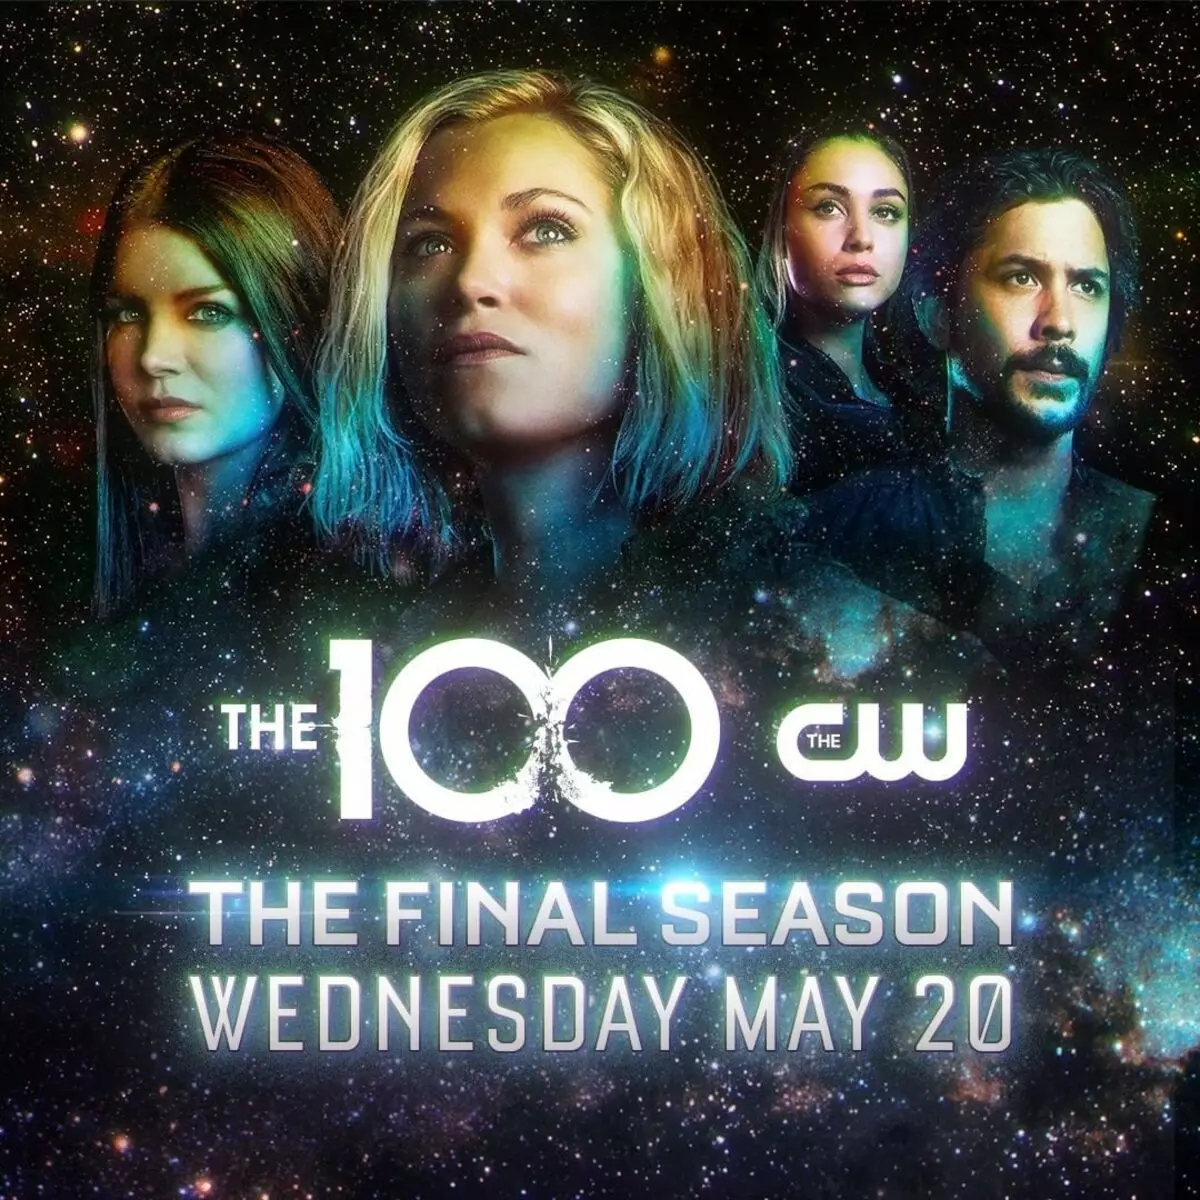 CW Channel ha annunciato la data della premiere della stagione finale 